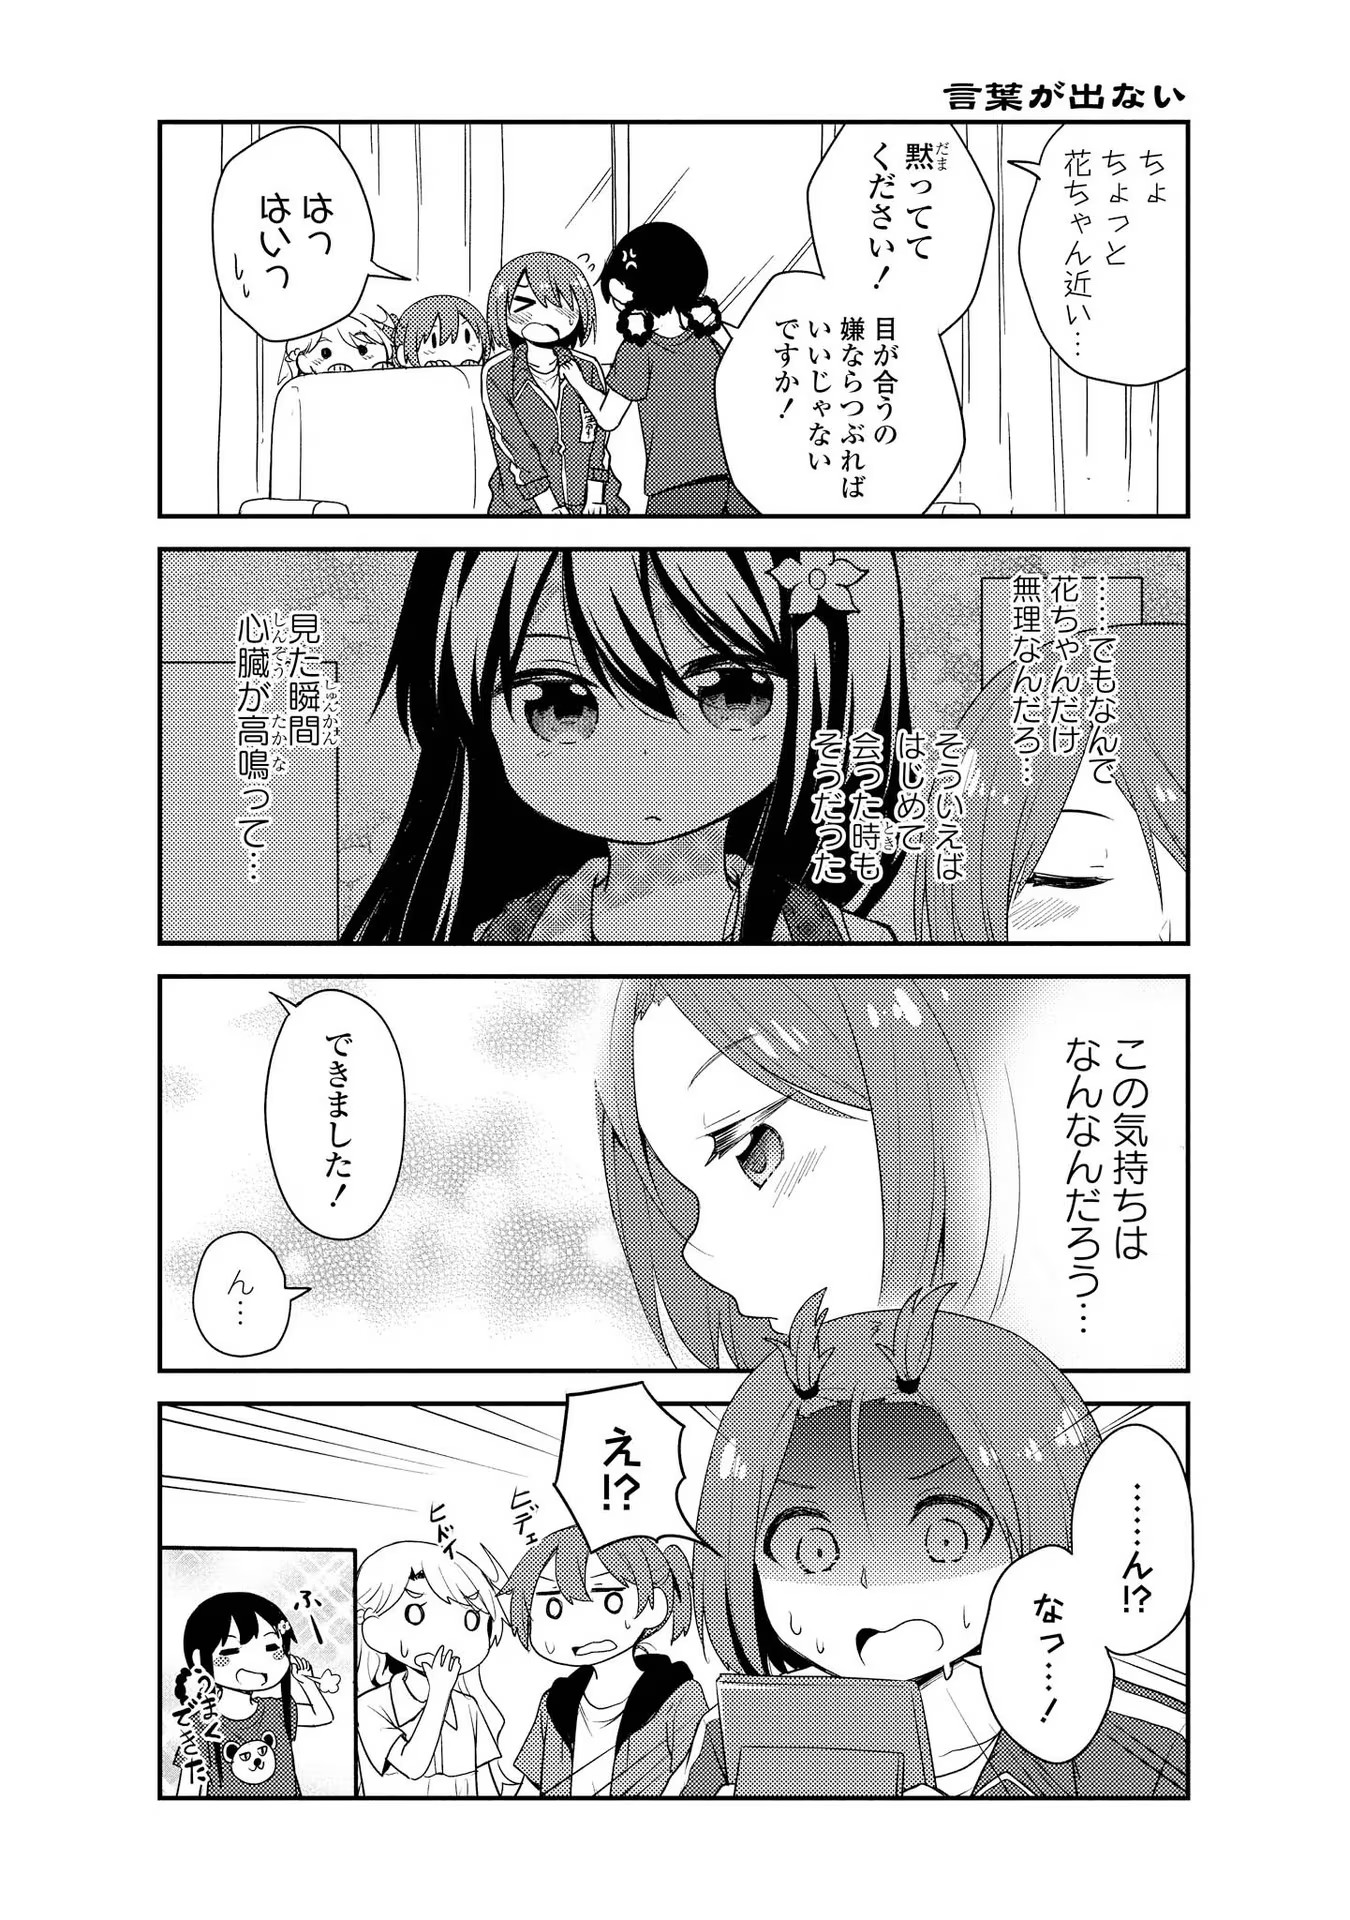 Watashi ni Tenshi ga Maiorita! - Chapter 16 - Page 12